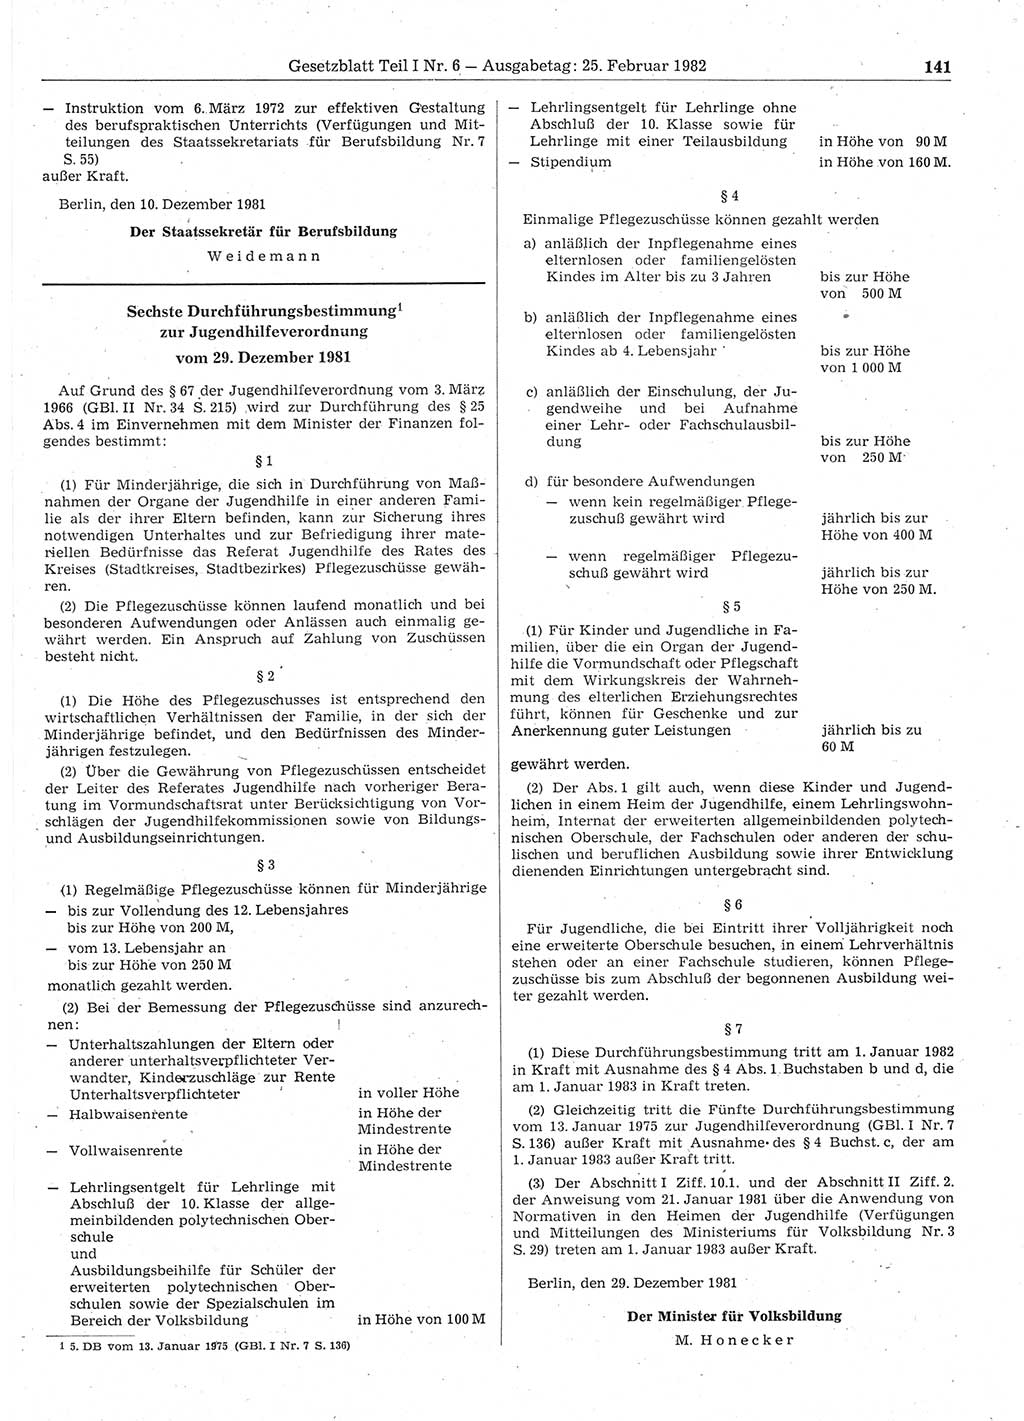 Gesetzblatt (GBl.) der Deutschen Demokratischen Republik (DDR) Teil Ⅰ 1982, Seite 141 (GBl. DDR Ⅰ 1982, S. 141)